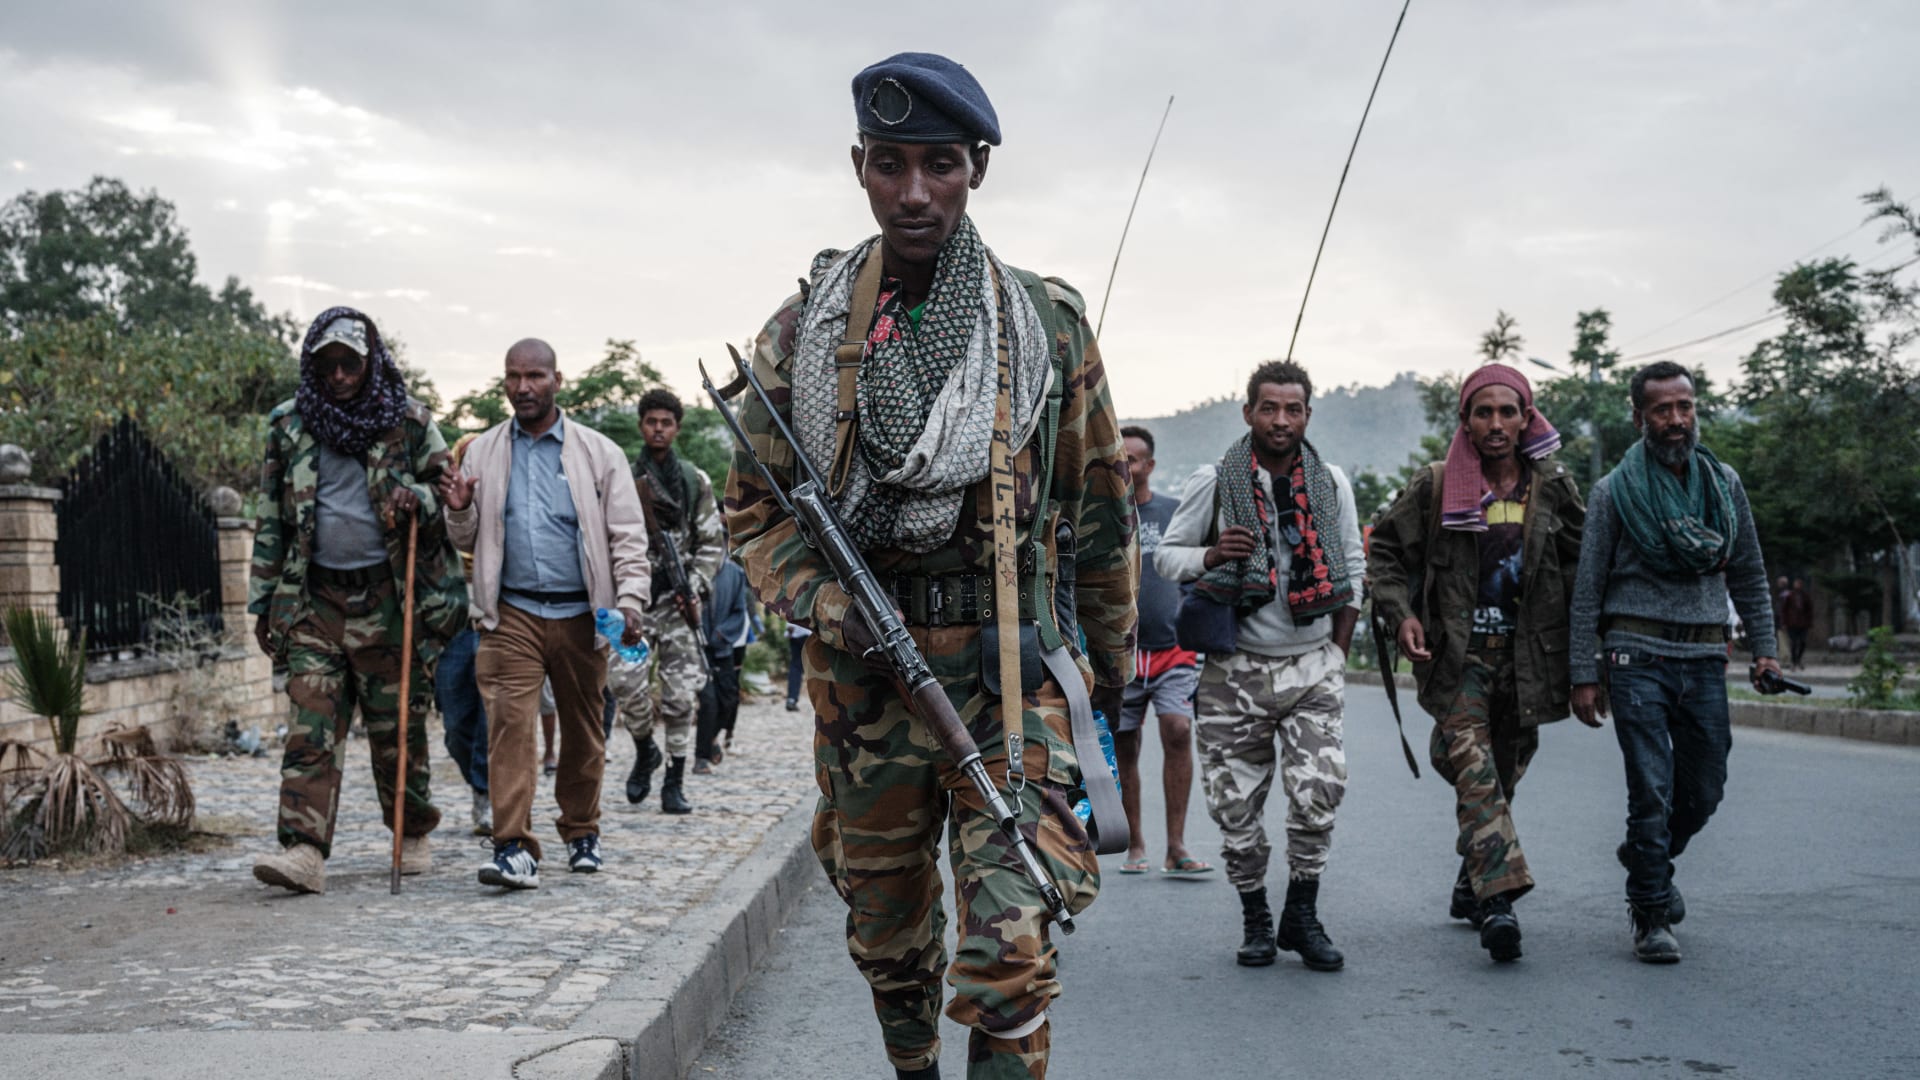 المتمردون على مشارف عاصمة إثيوبيا.. هل بات انهيار الحكومة وشيكًا؟ 